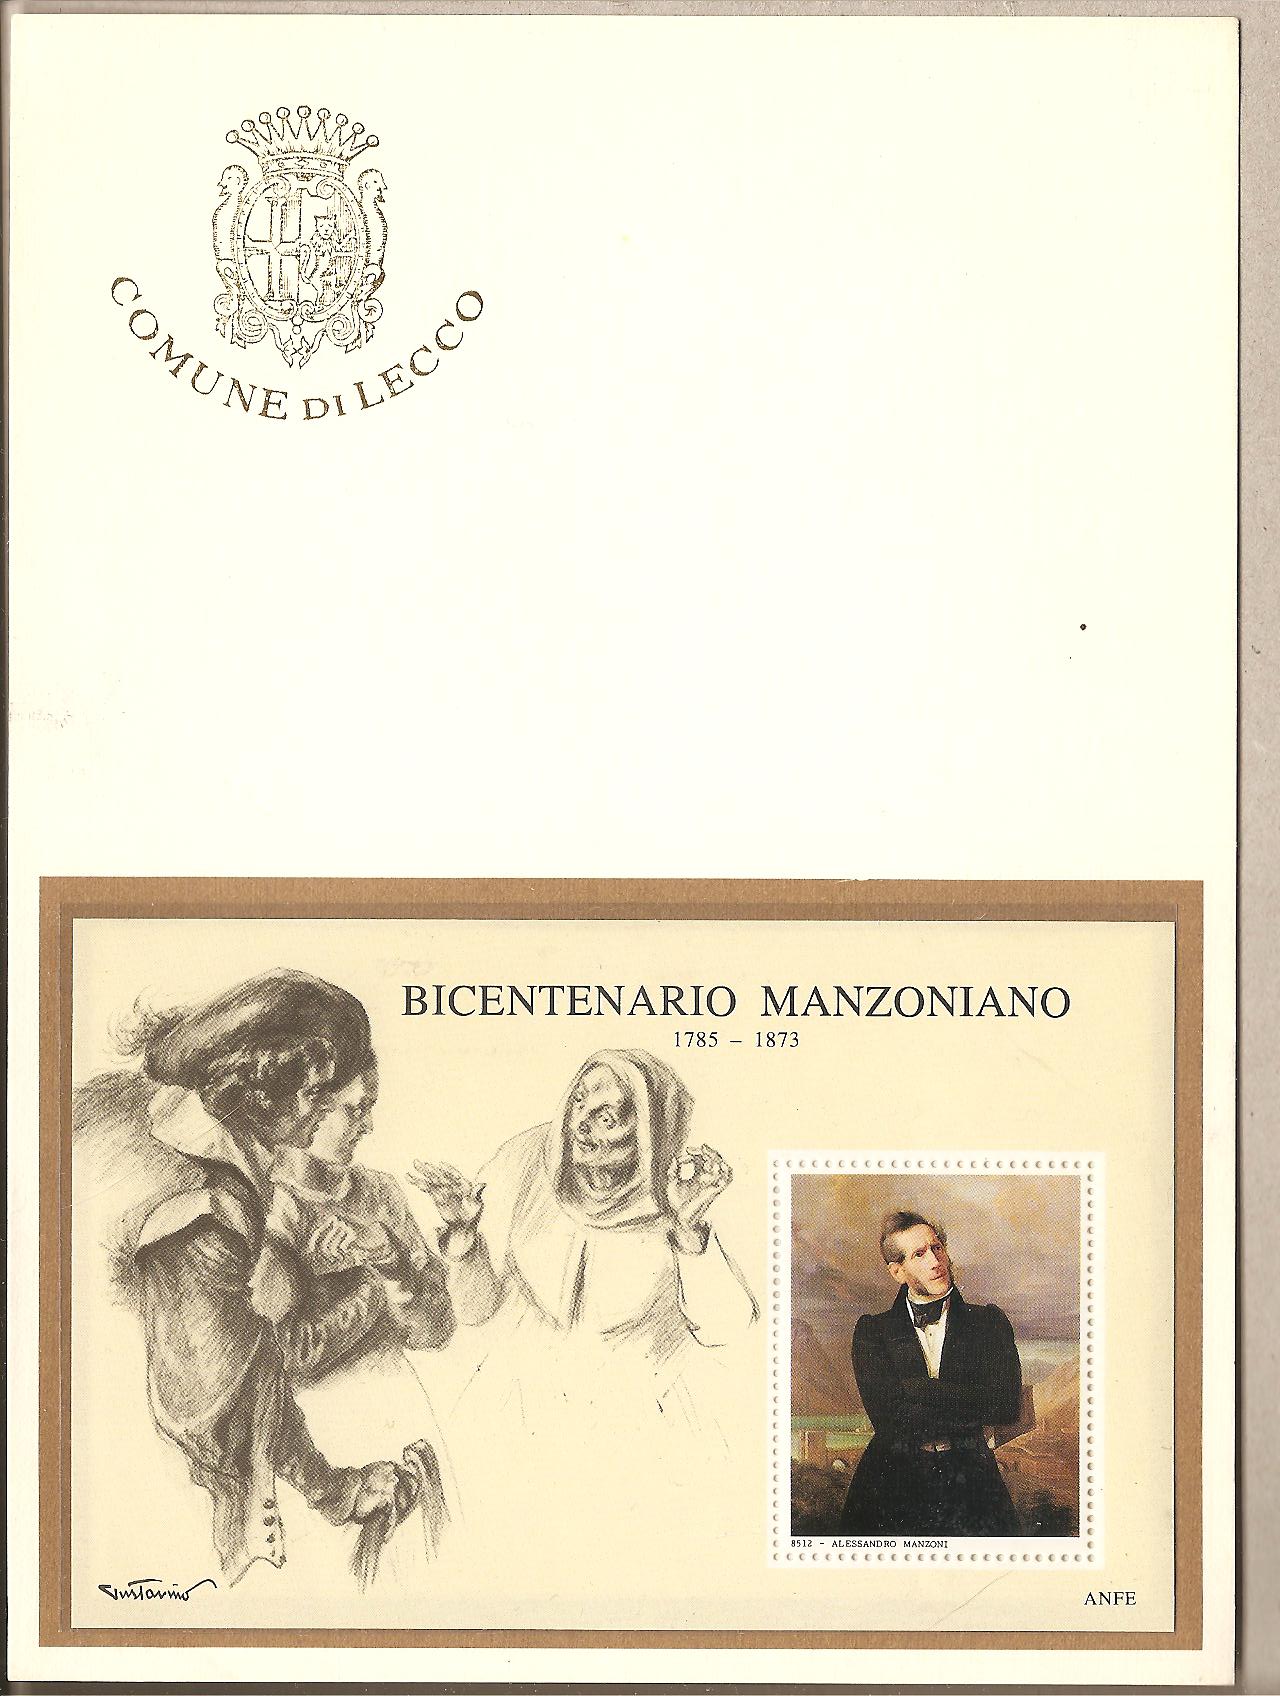 39630 - Italia - foglietto erinnofilo in folderino: Bicentenario Manzoniano - 1985